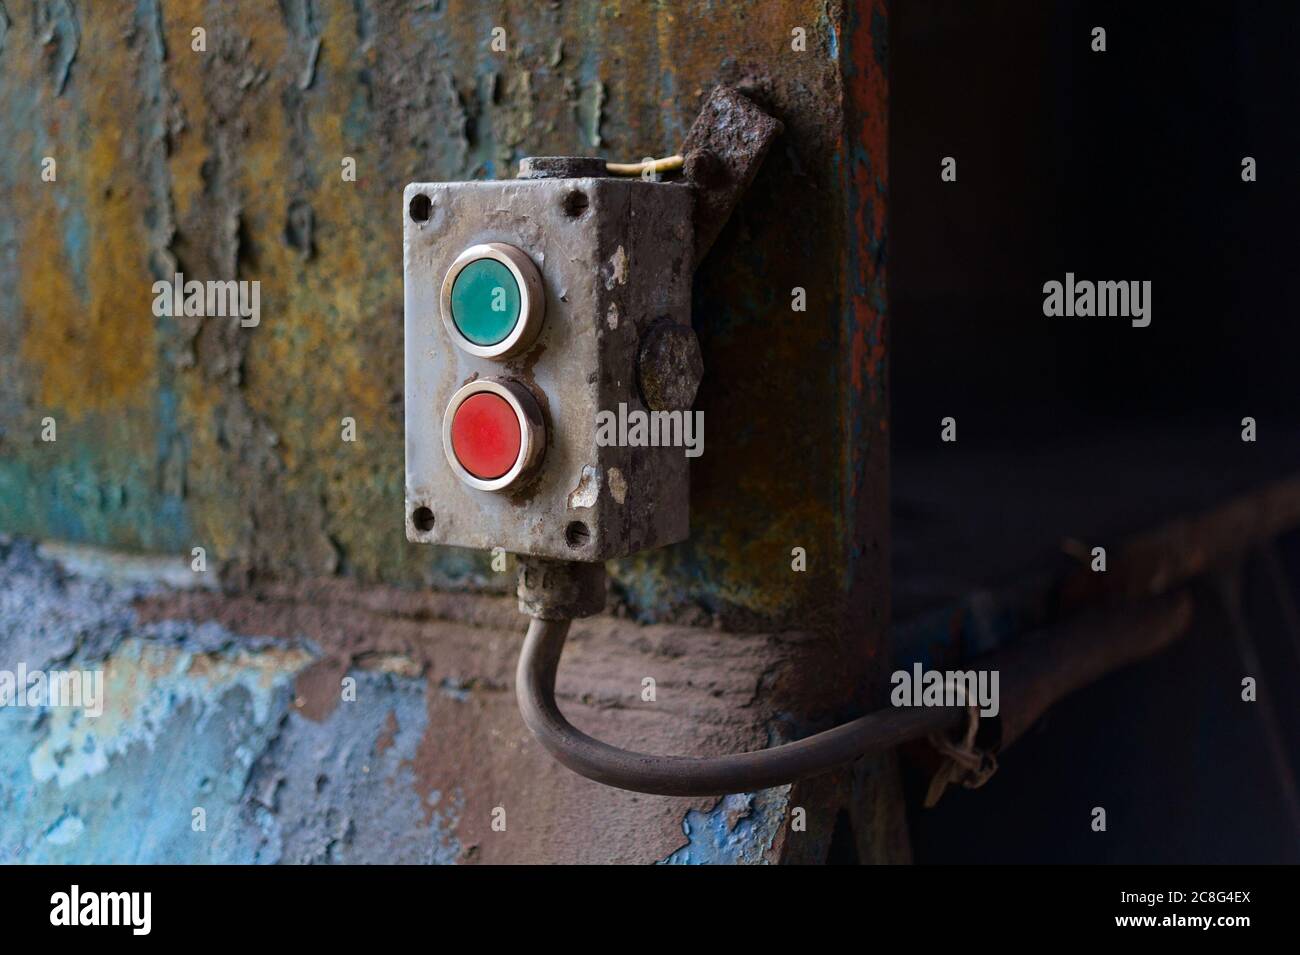 Gerät zur Steuerung von Industriemaschinen mit roter und grüner Taste zum ein- oder Ausschalten. Die verrostete Platte ist alt und verblasst Stockfoto